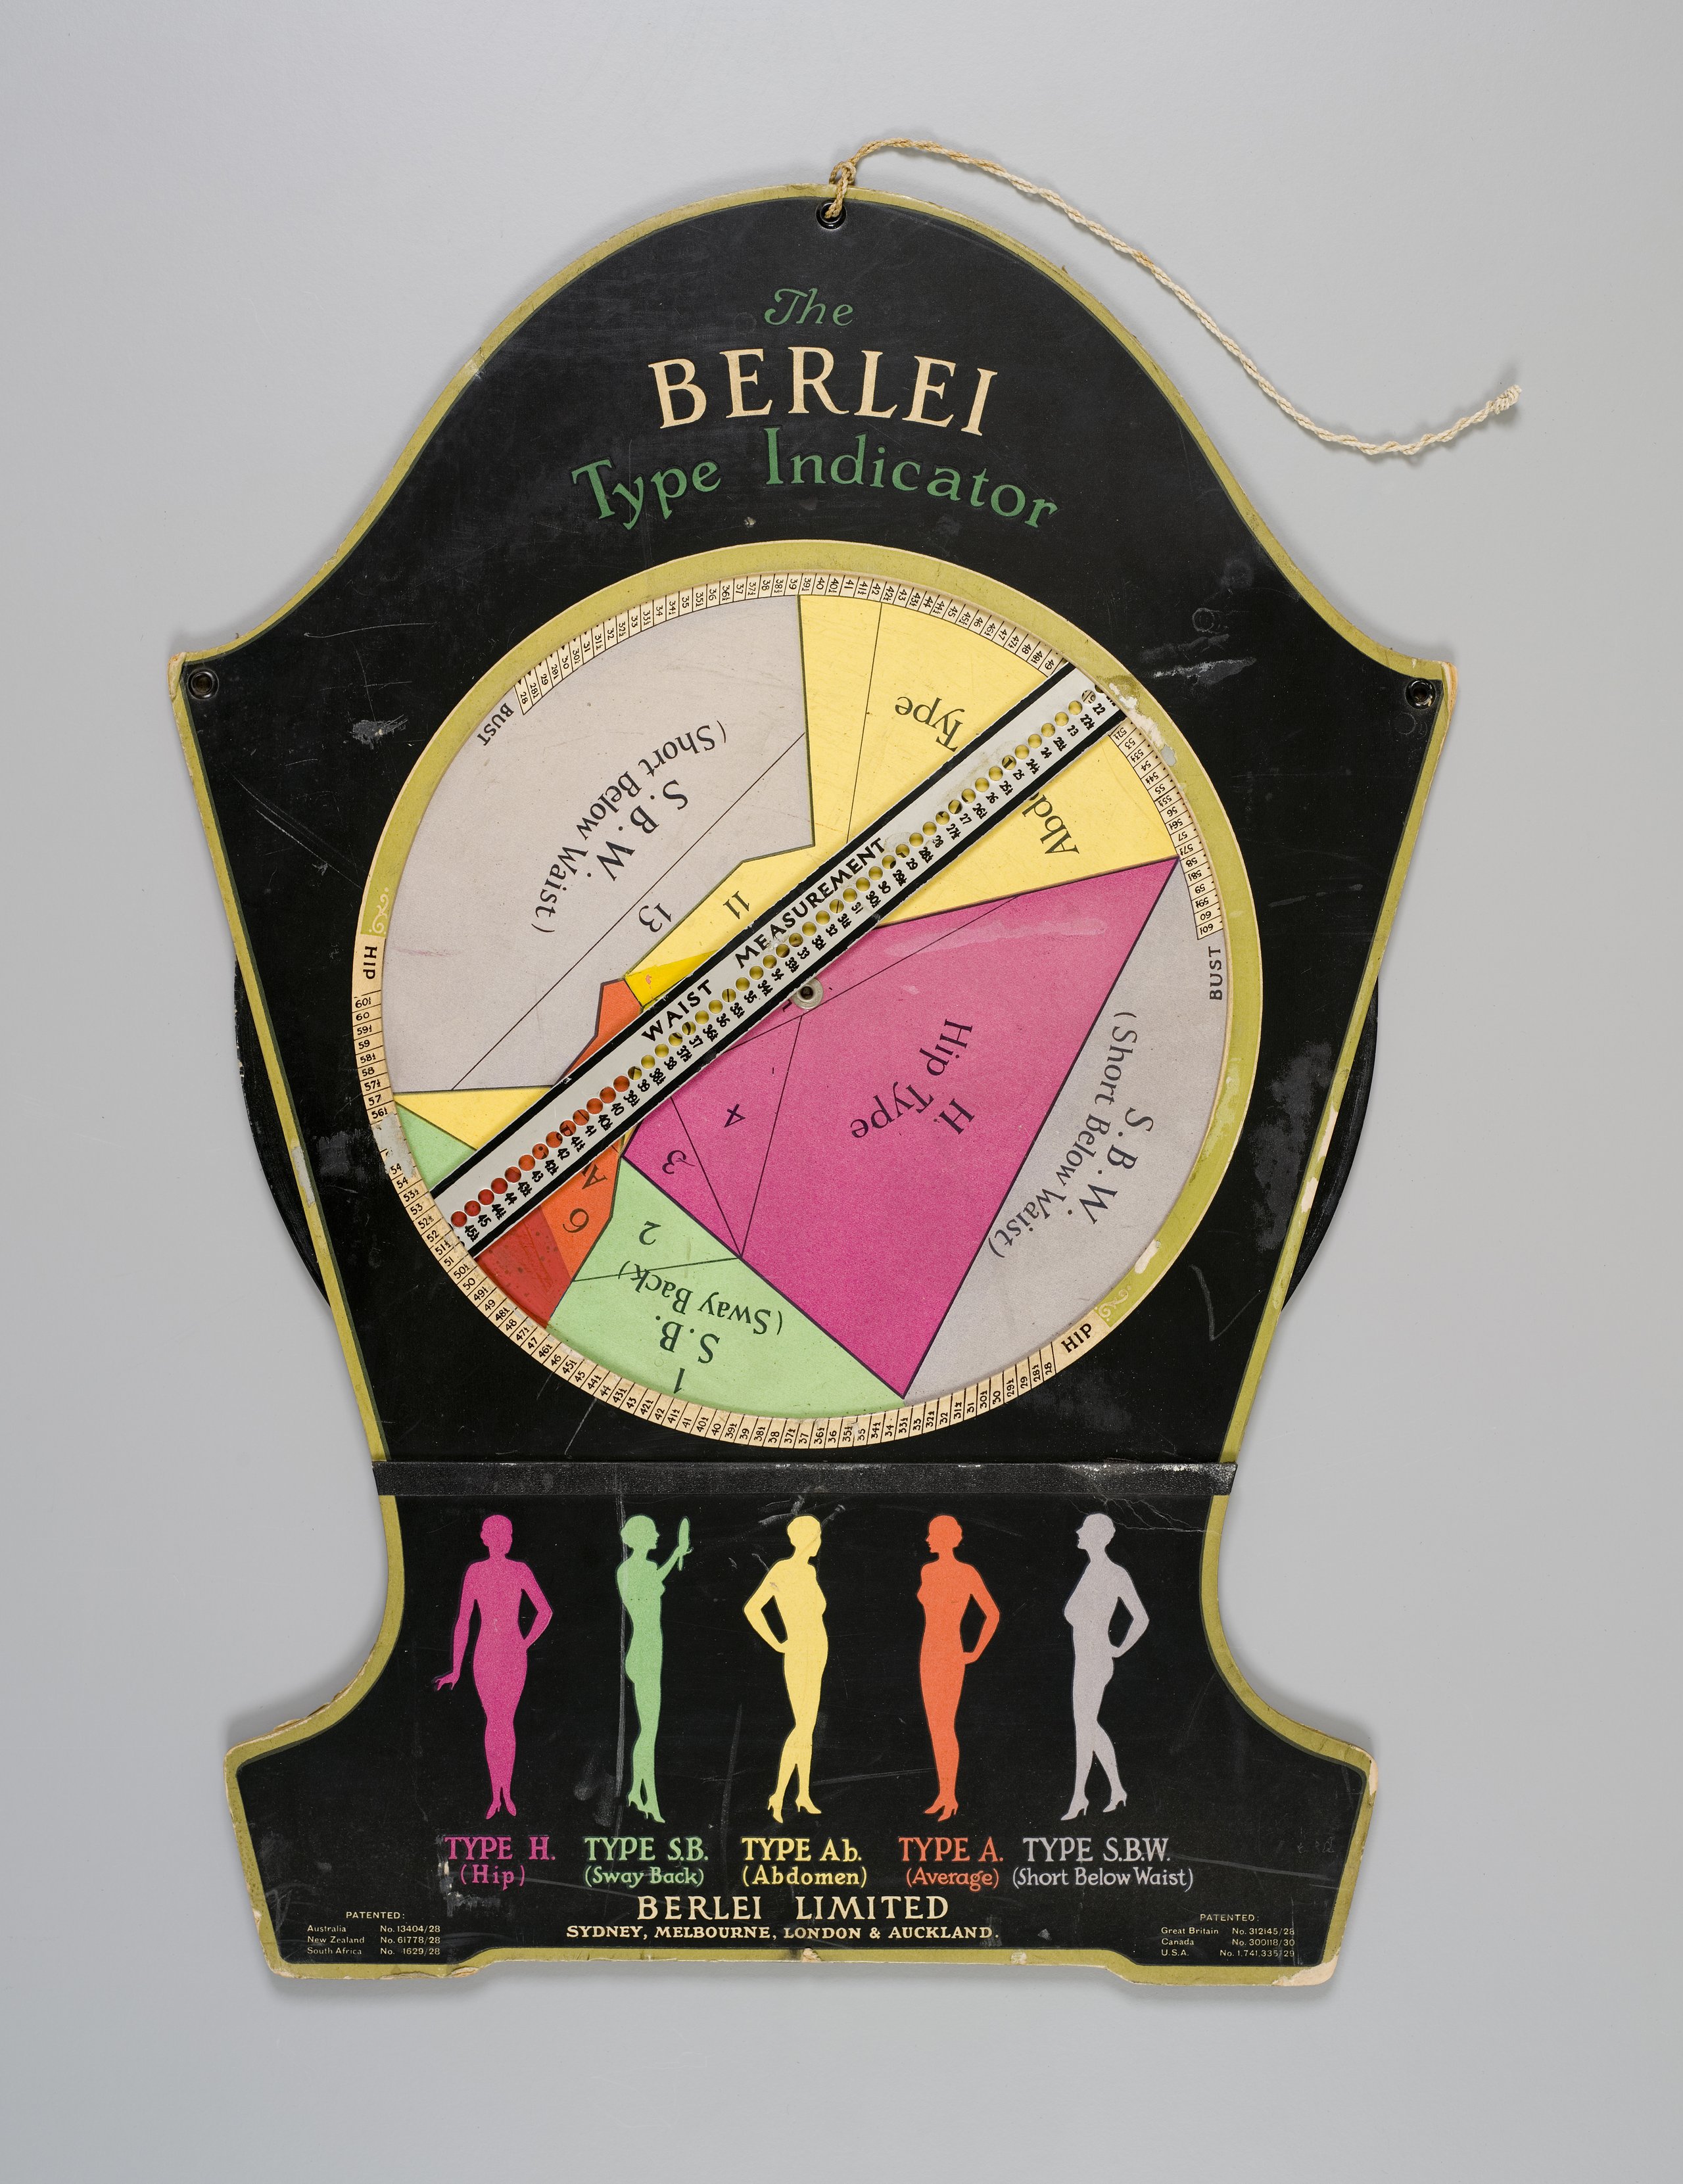 'The Berlei Type Indicator' chart by Berlei Ltd